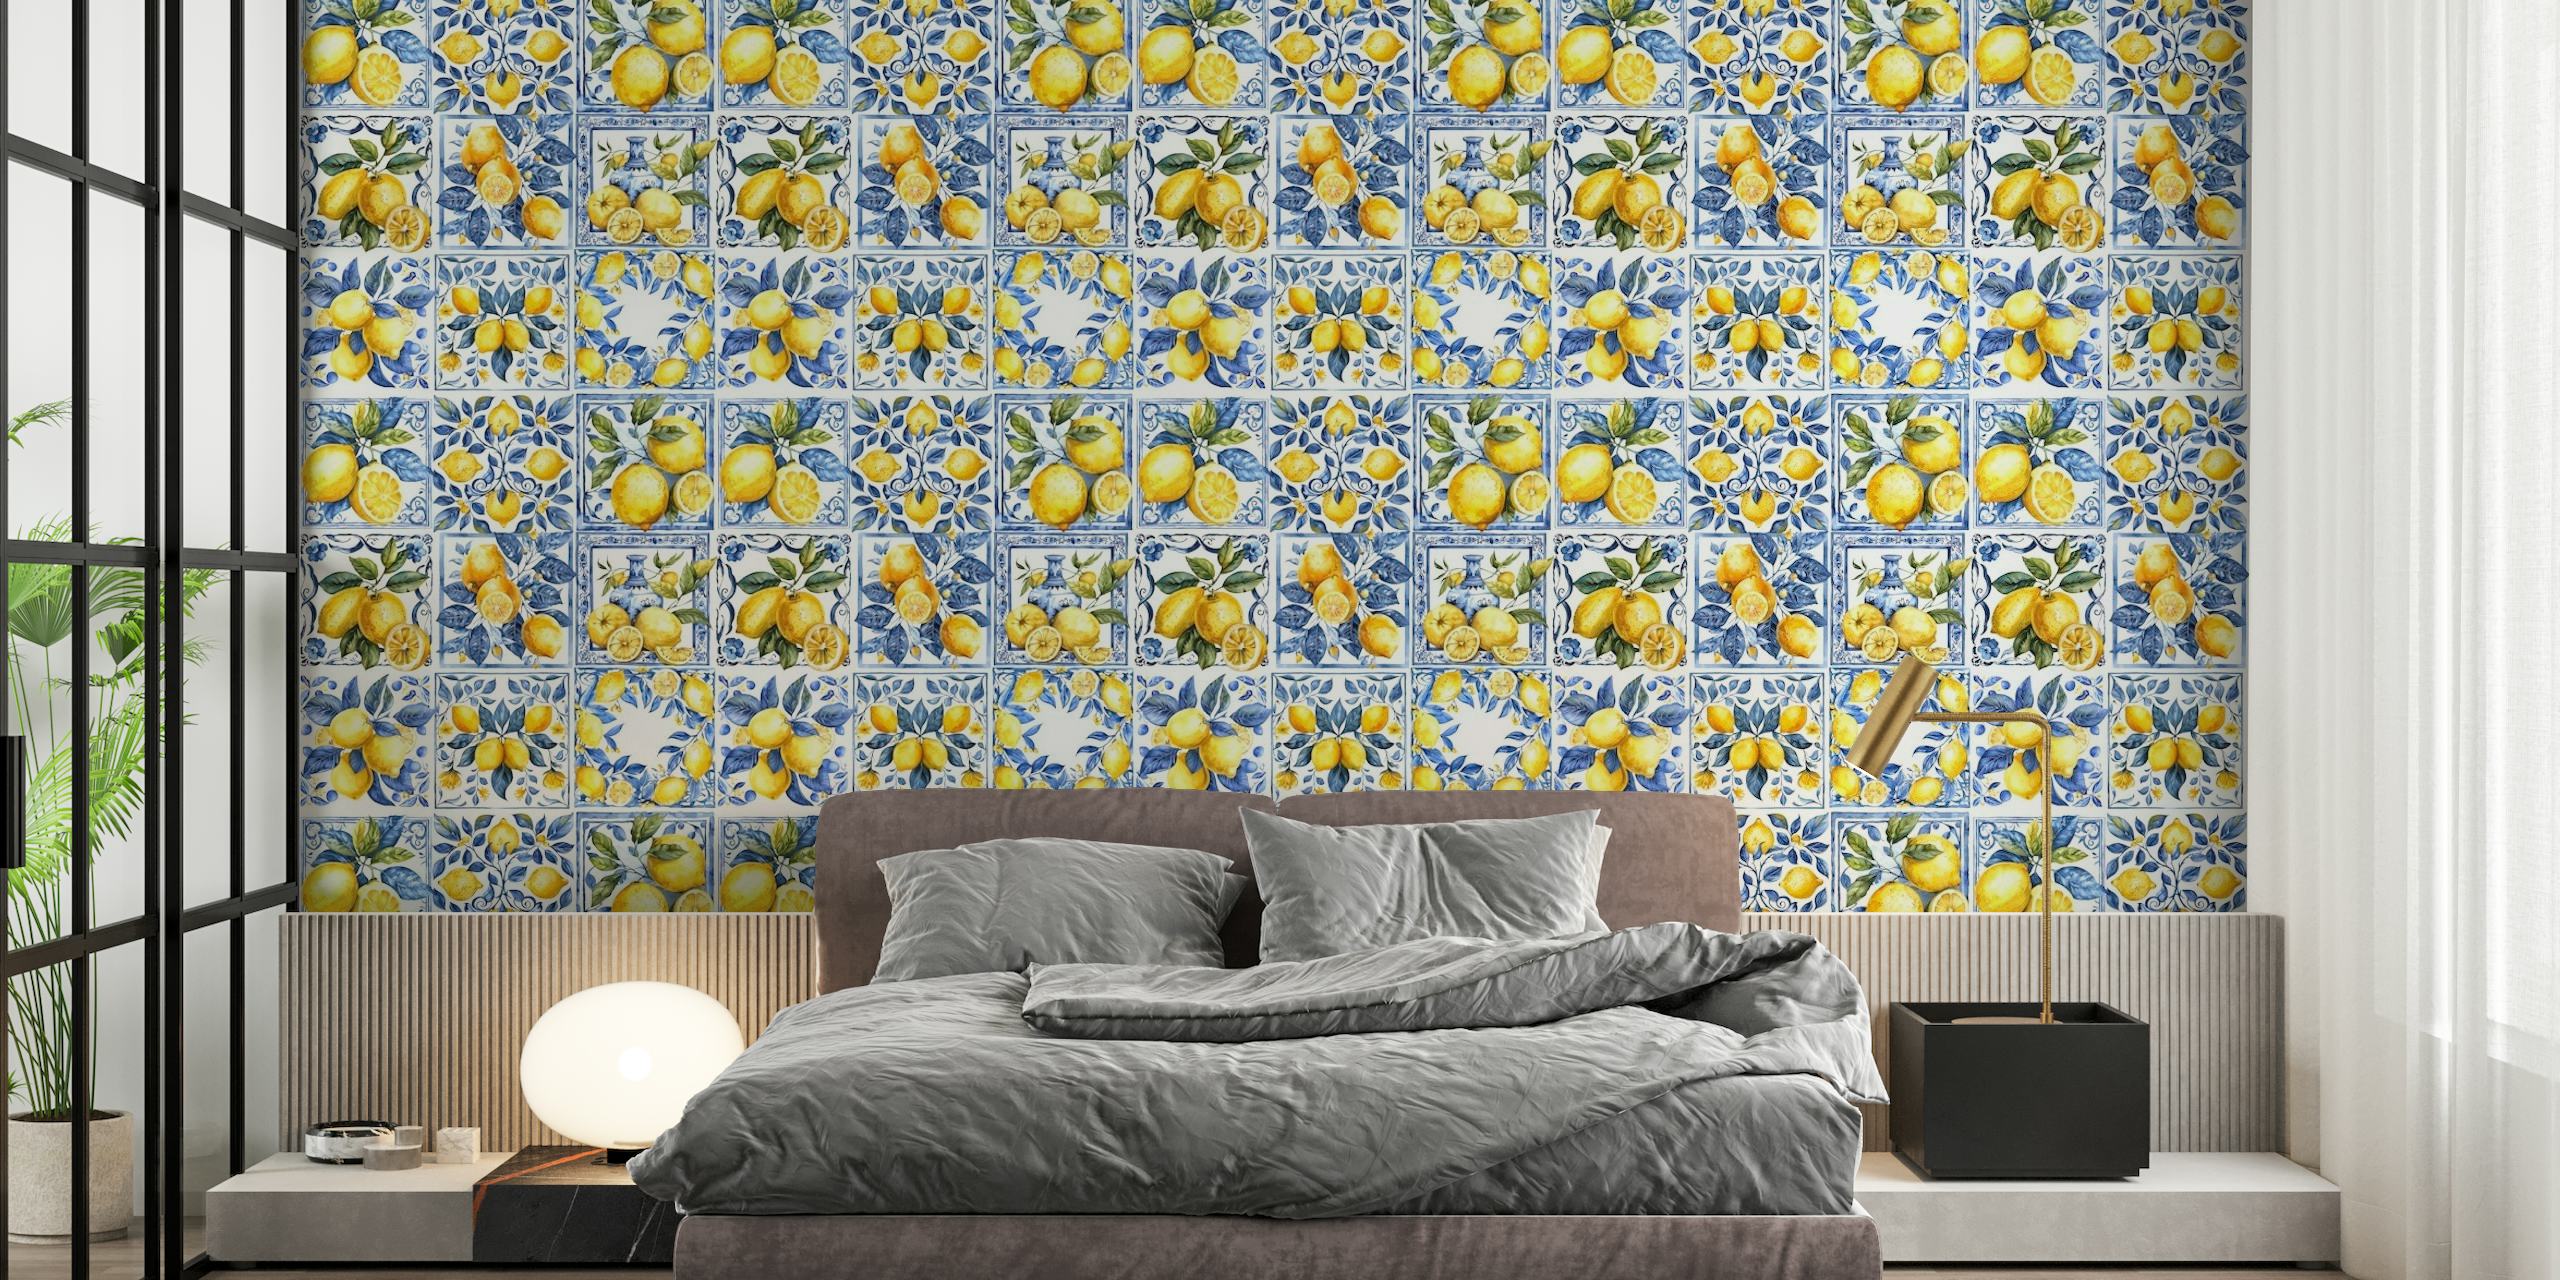 Mediterranean tiles with lemons mural tapete